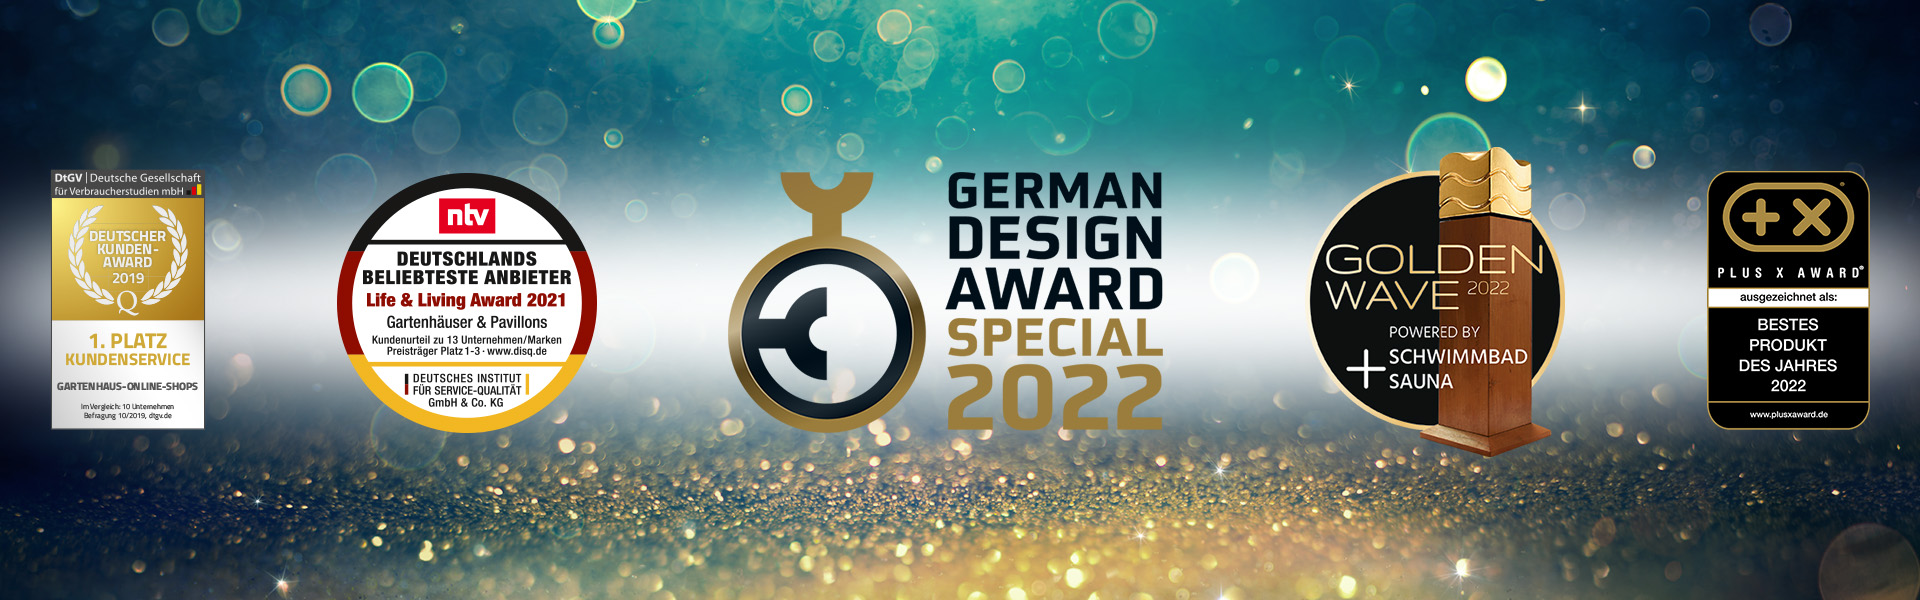 BUTENAS Sauna FUTURA wird ausgezeichnet beim German Design Award 2022